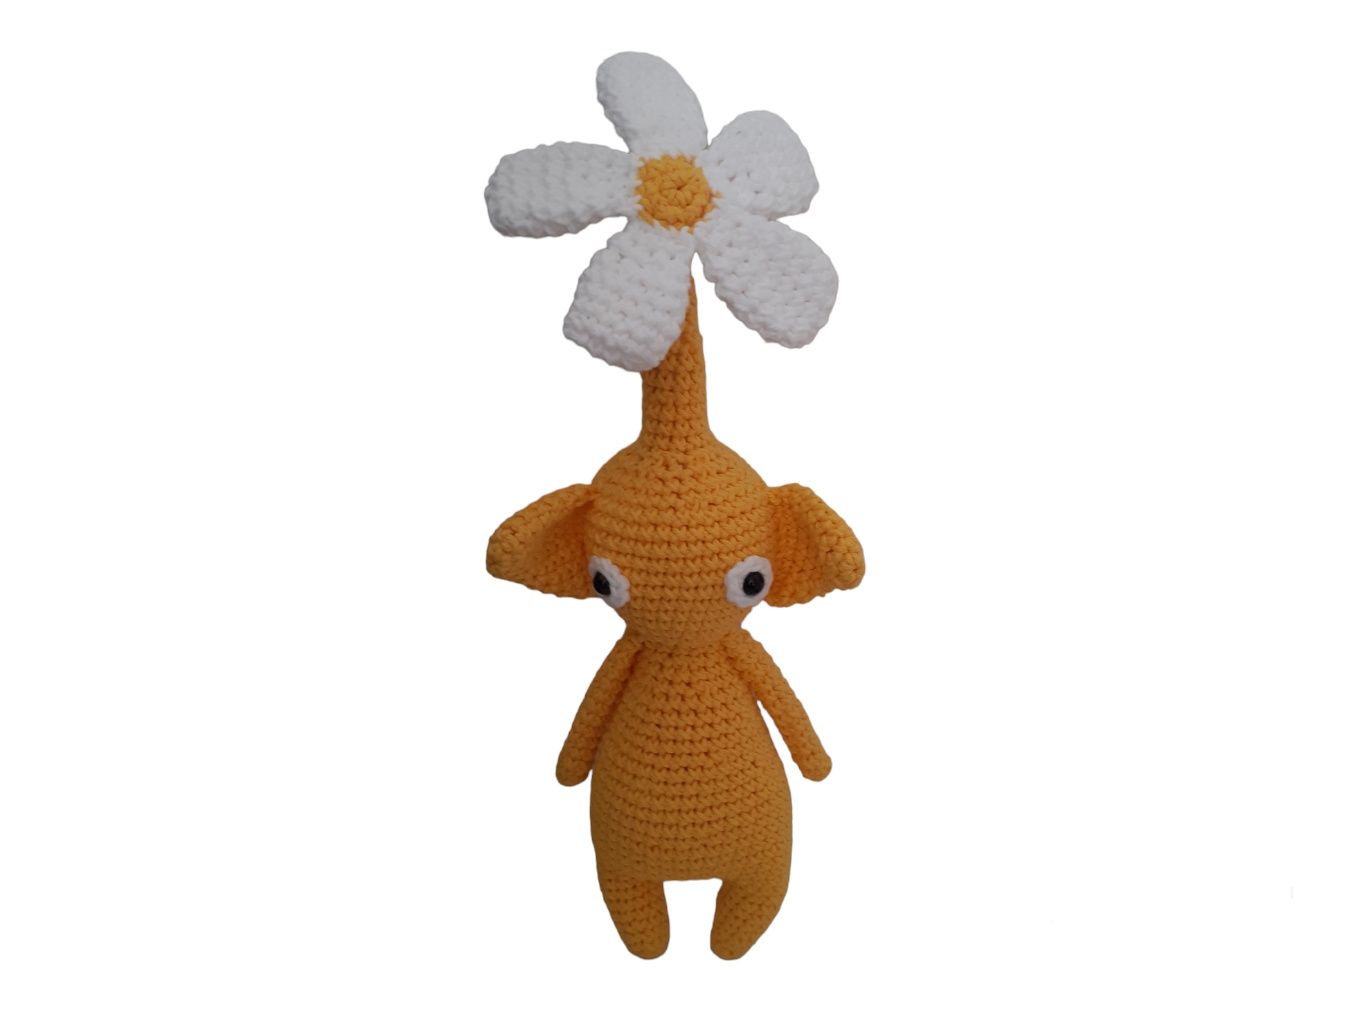 Pikmin amarelo com flor em crochet amigurumi